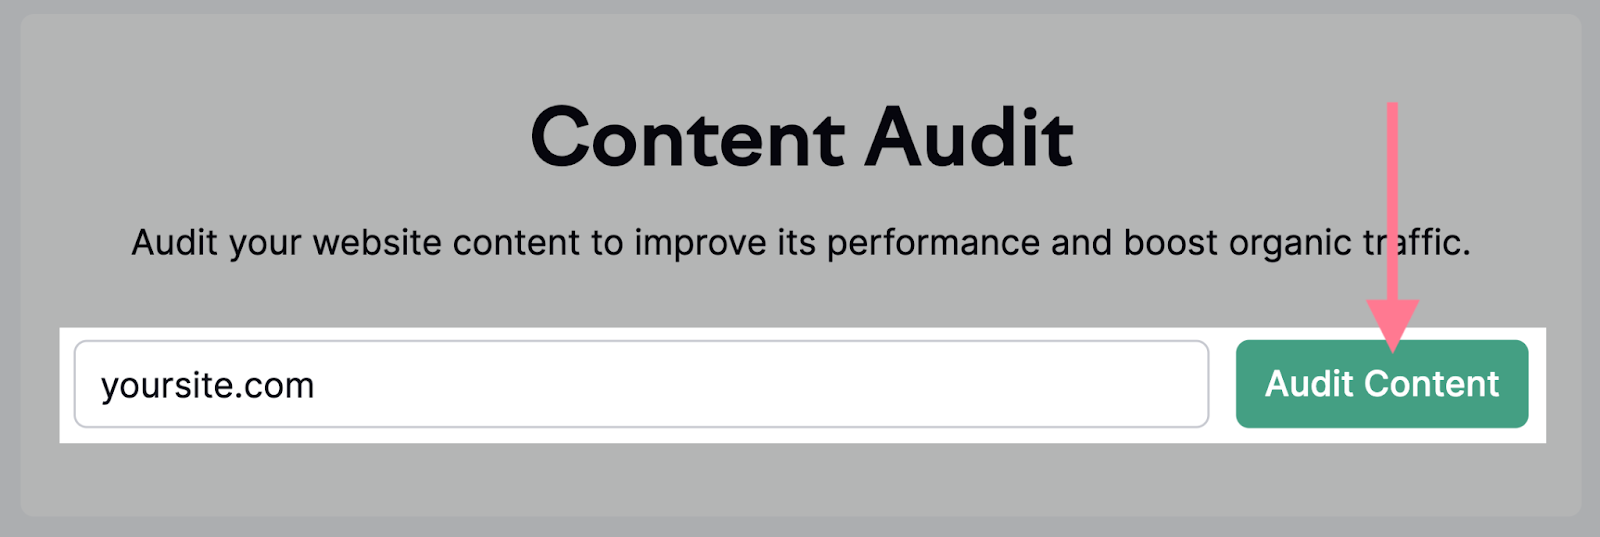 Content Audit tool